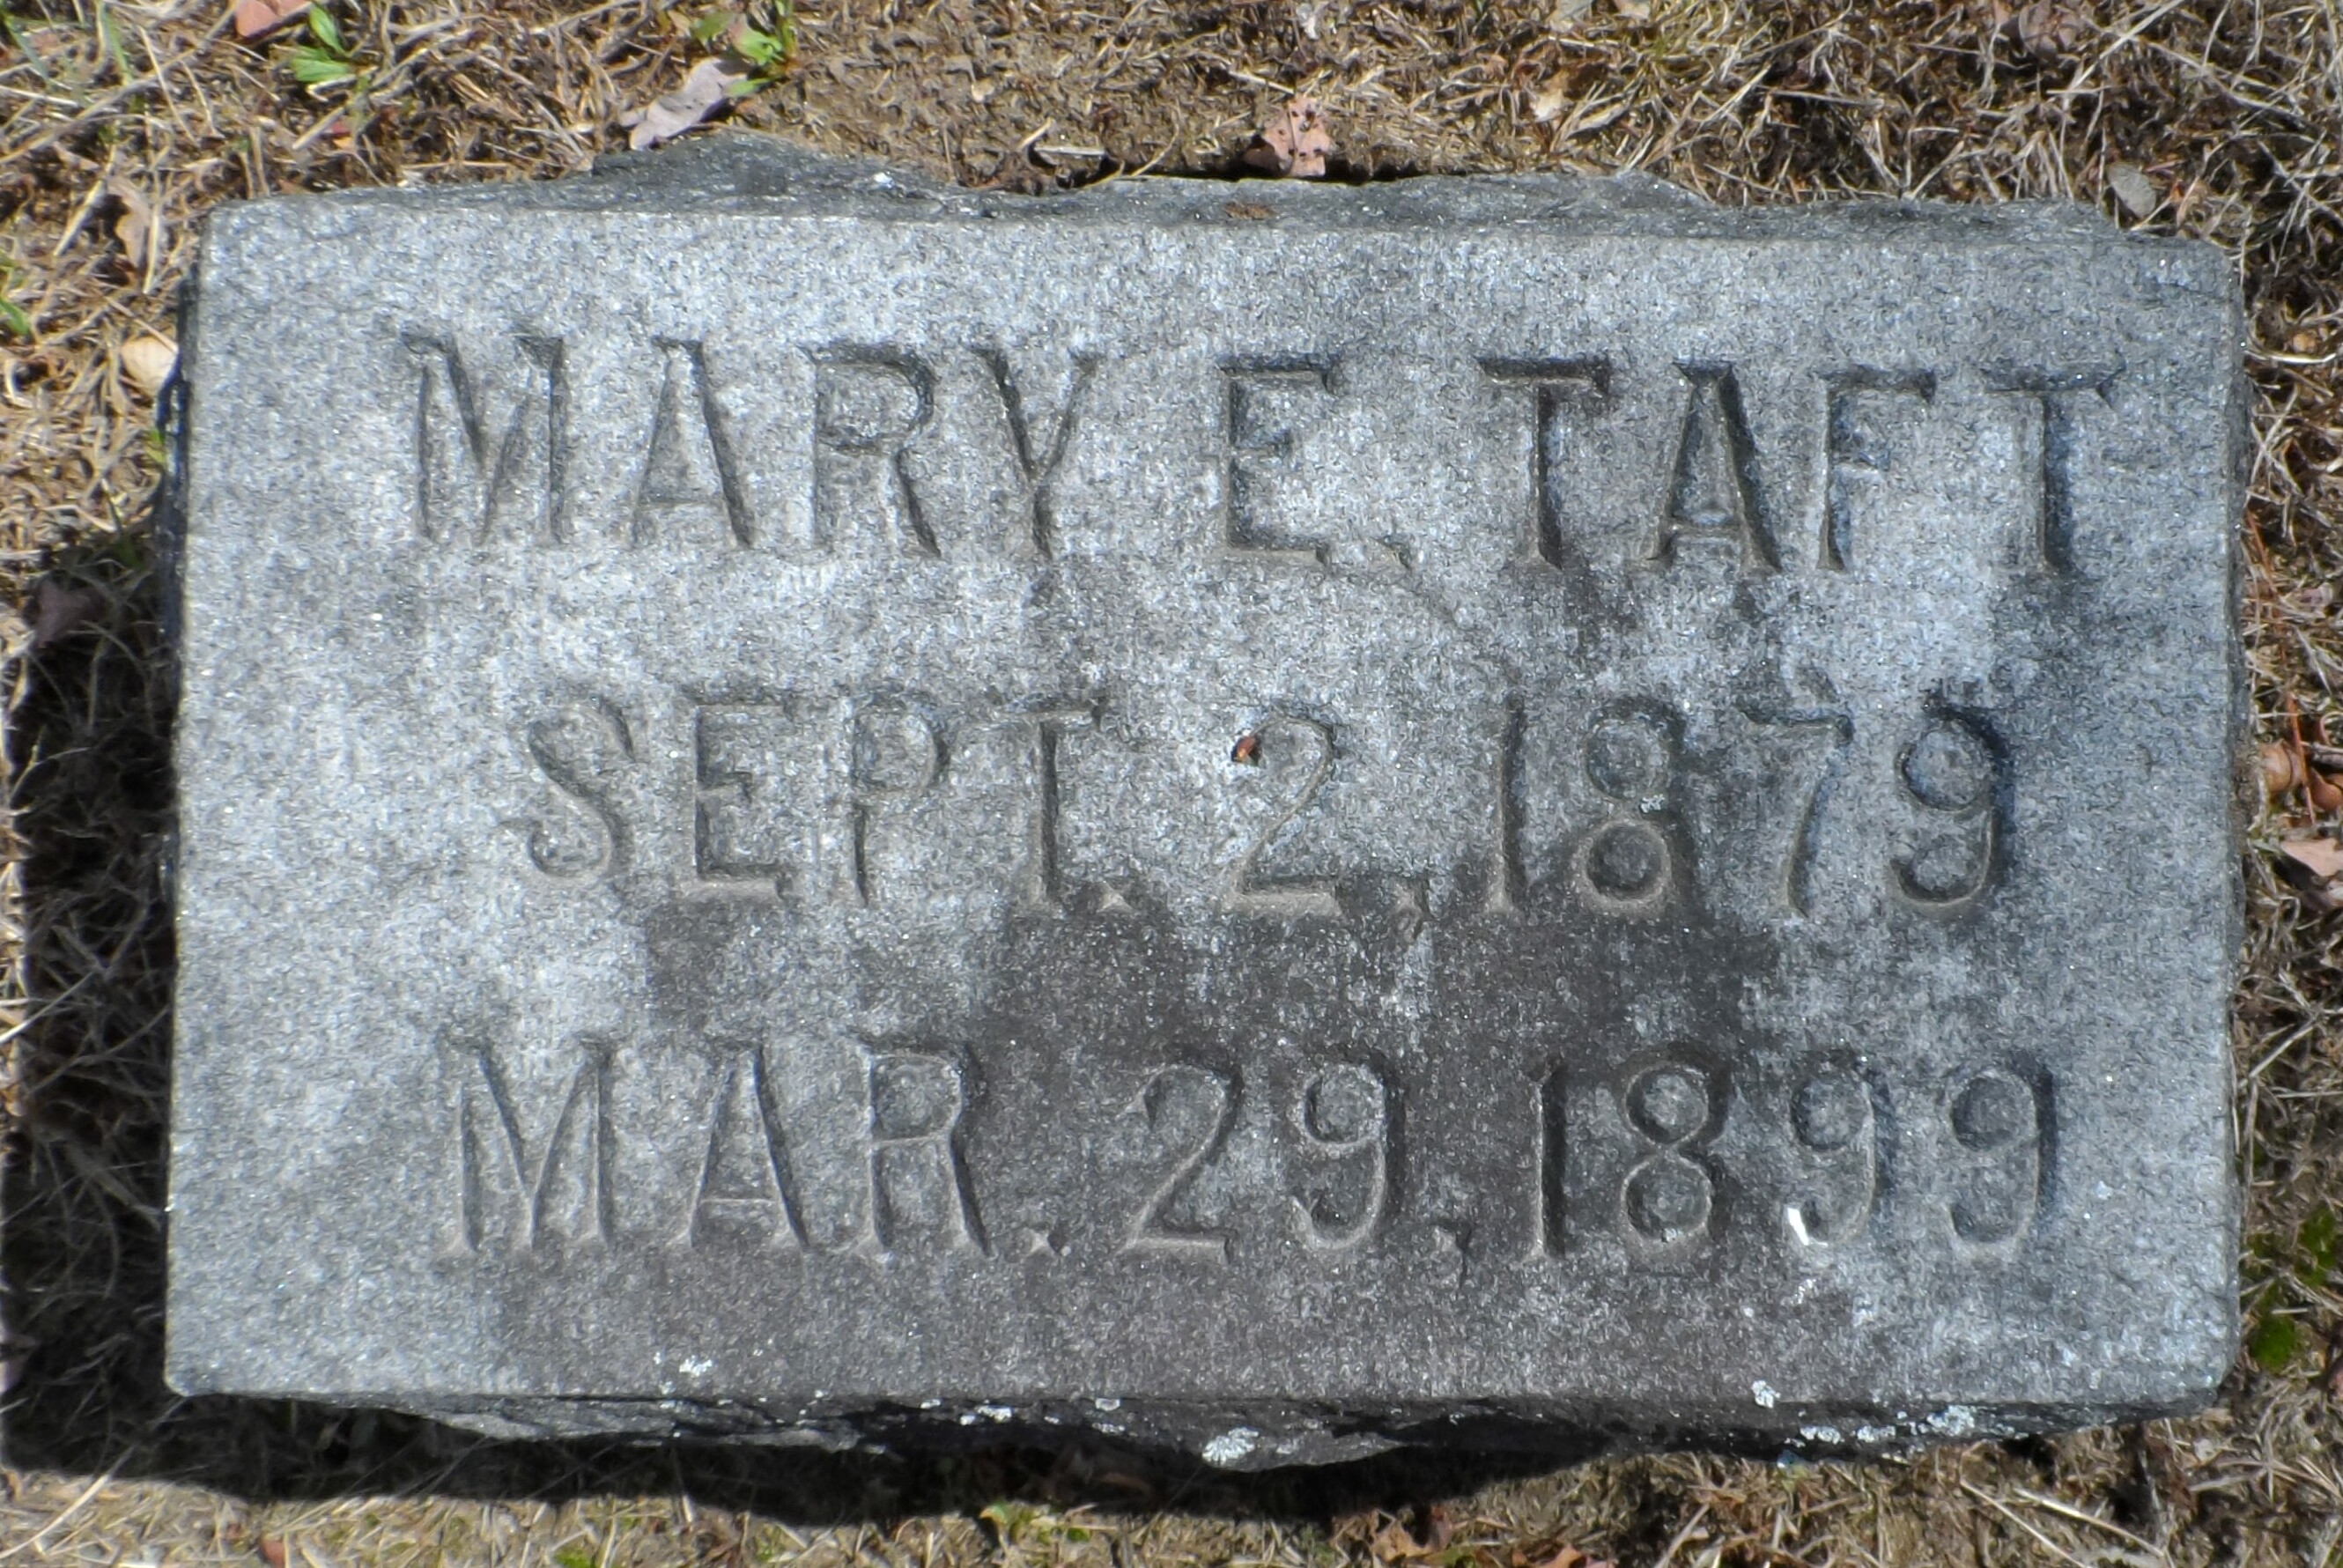 Tombstone of Mary E. Taft